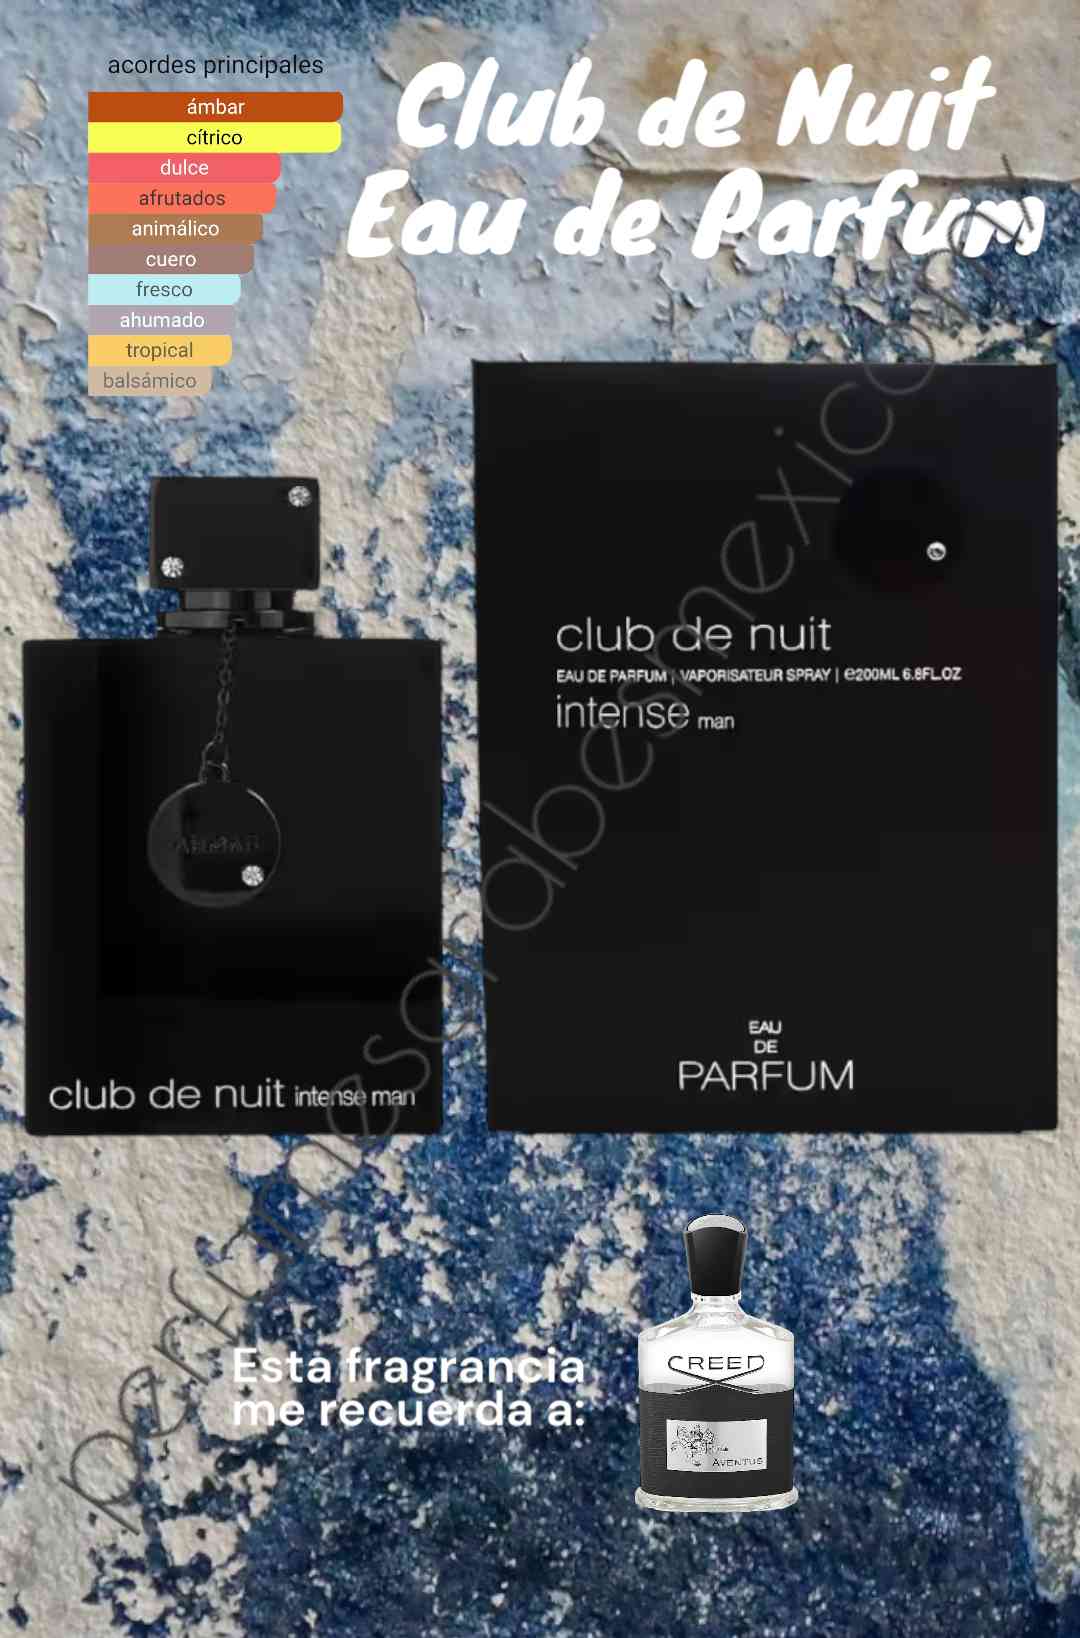 Club de Nuit Eau de Parfum by ARMAF 200ml